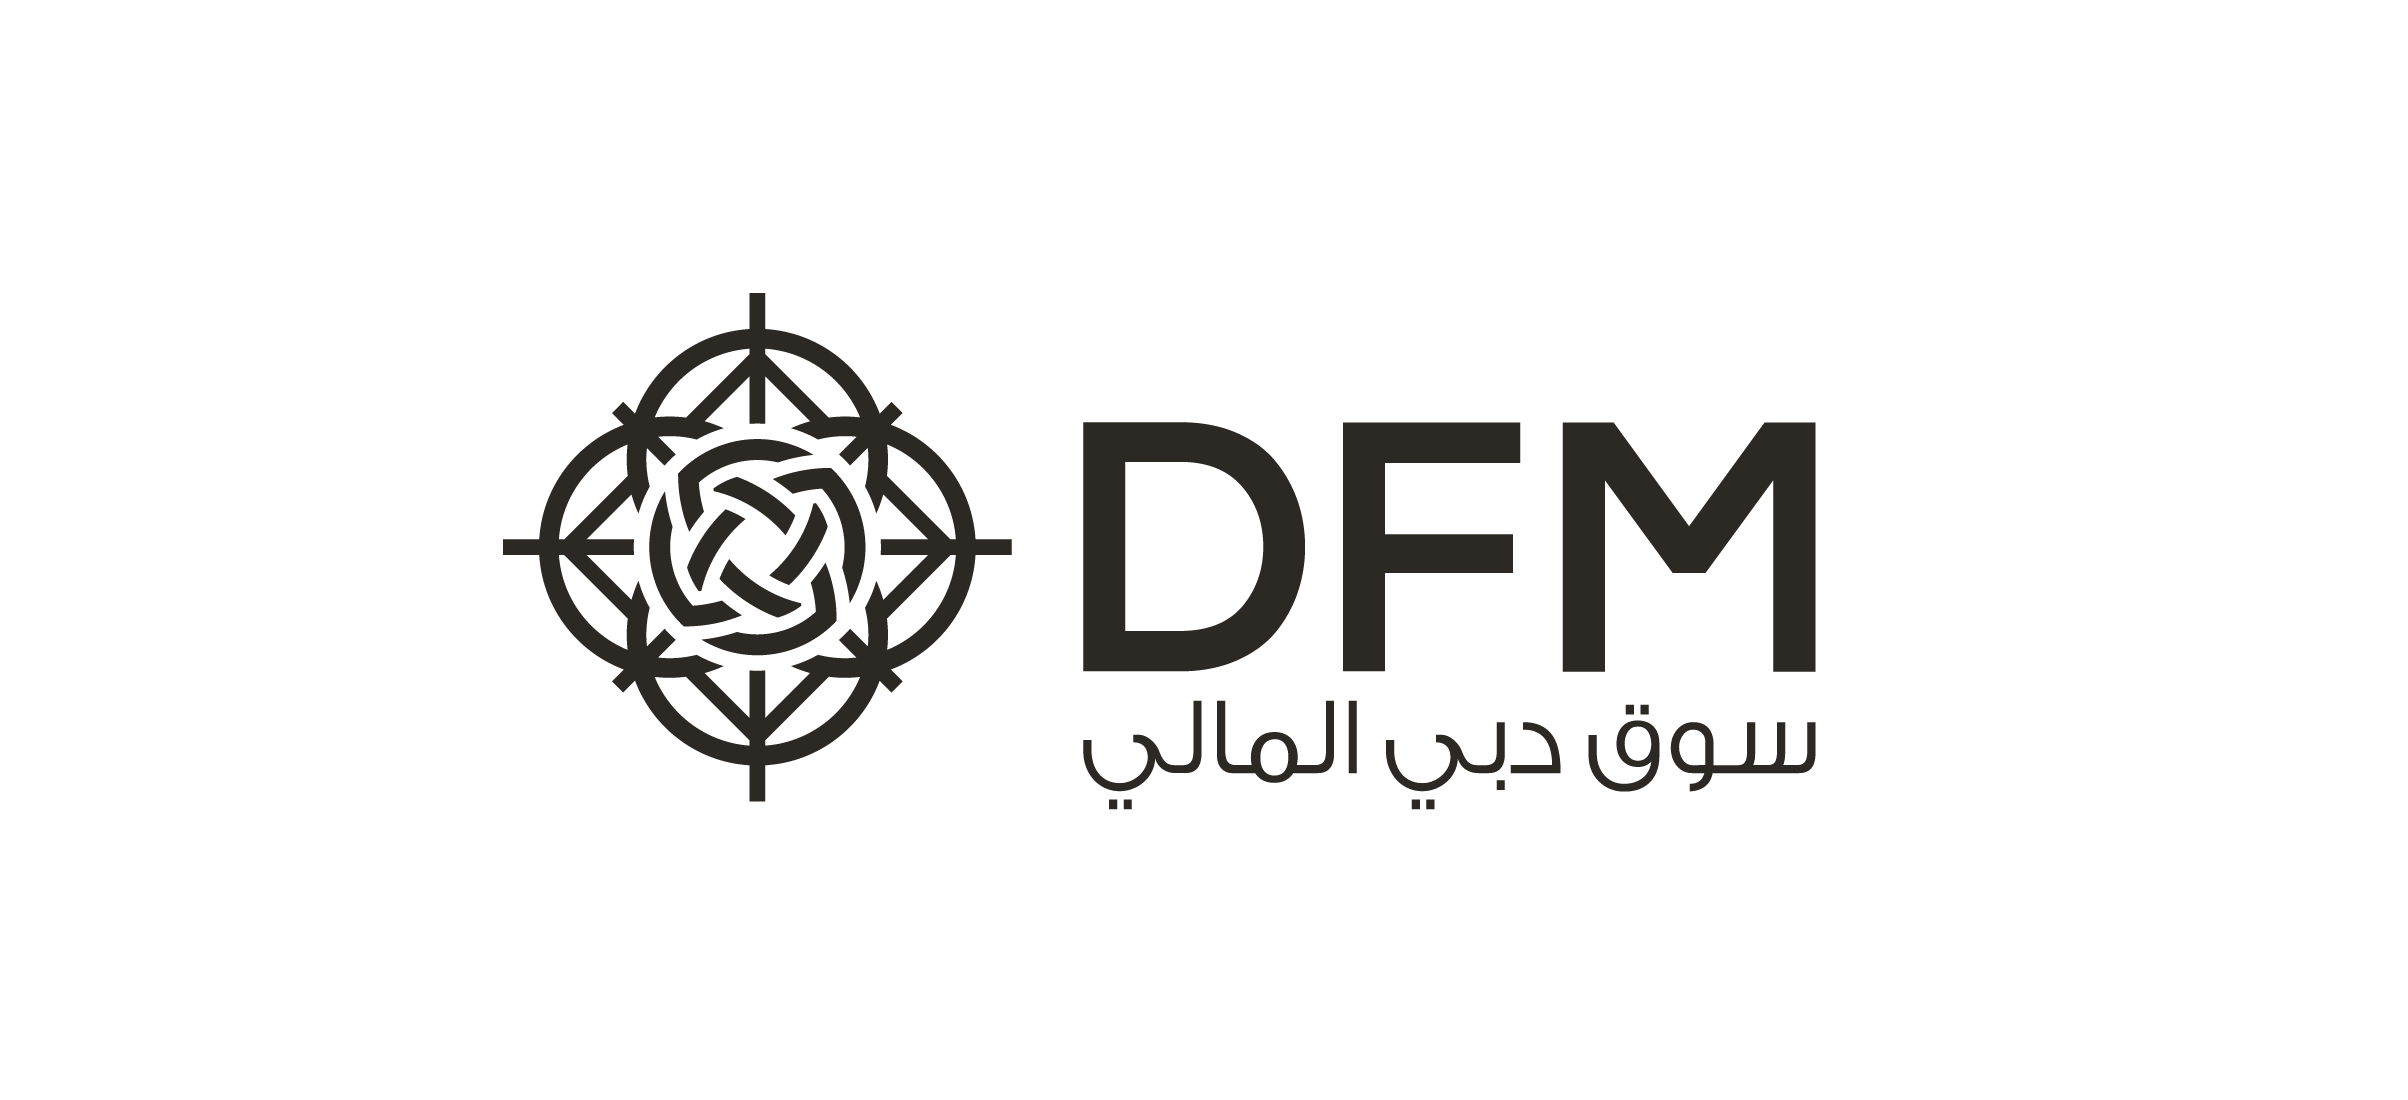 95.6 مليون درهم صافي أرباح سوق دبي المالي في الربع الأول